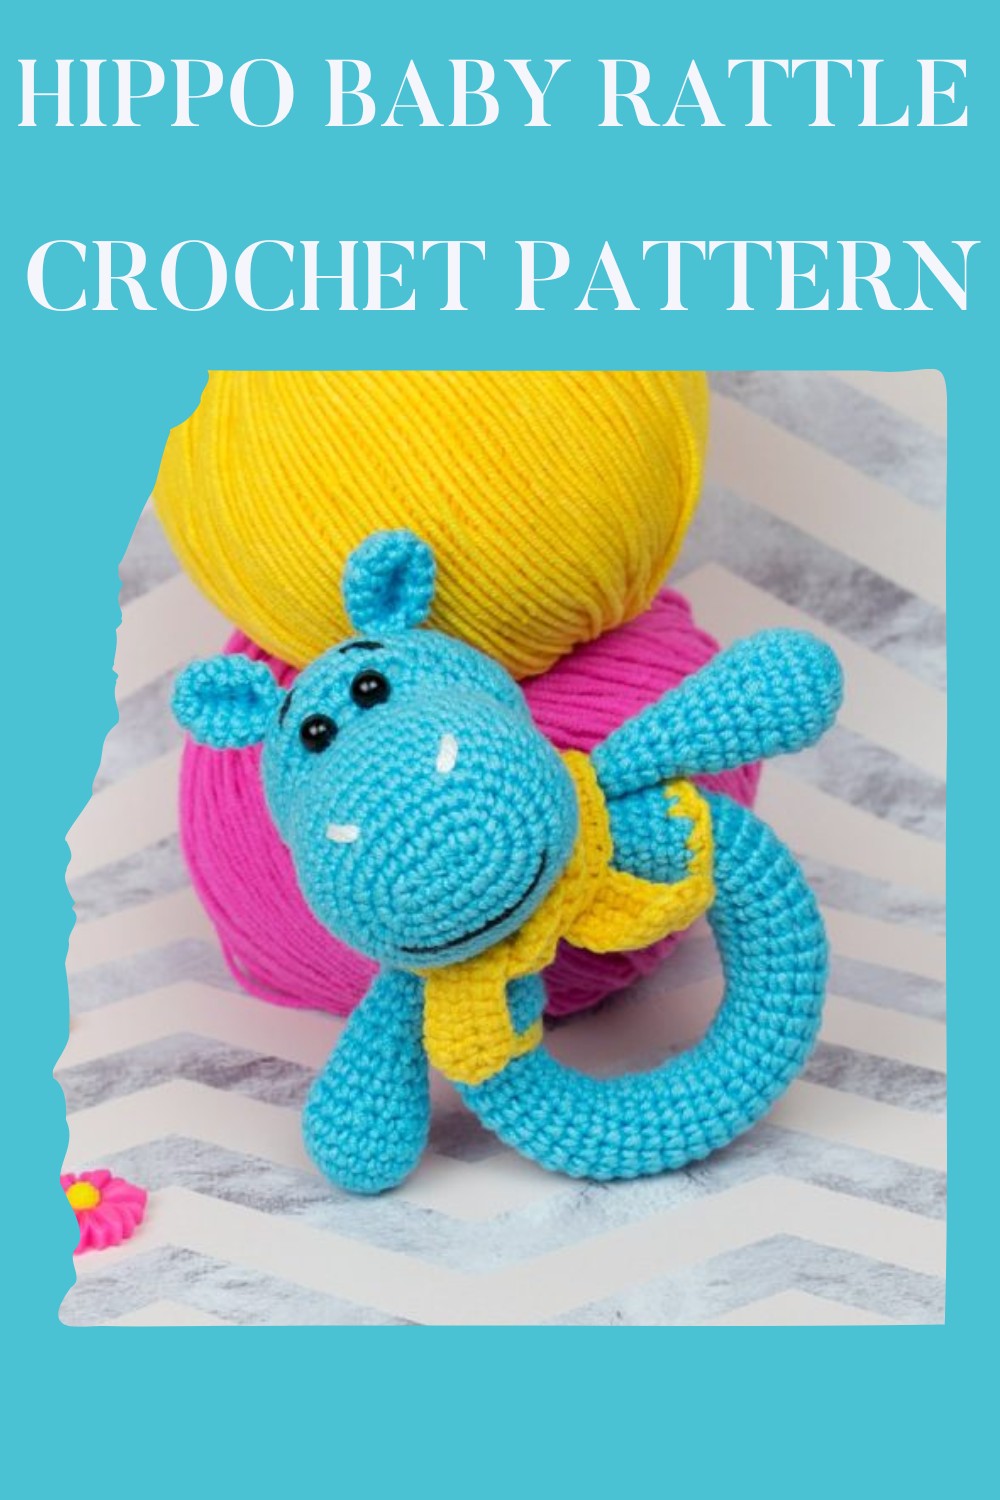 Hippo Baby Rattle Crochet Pattern